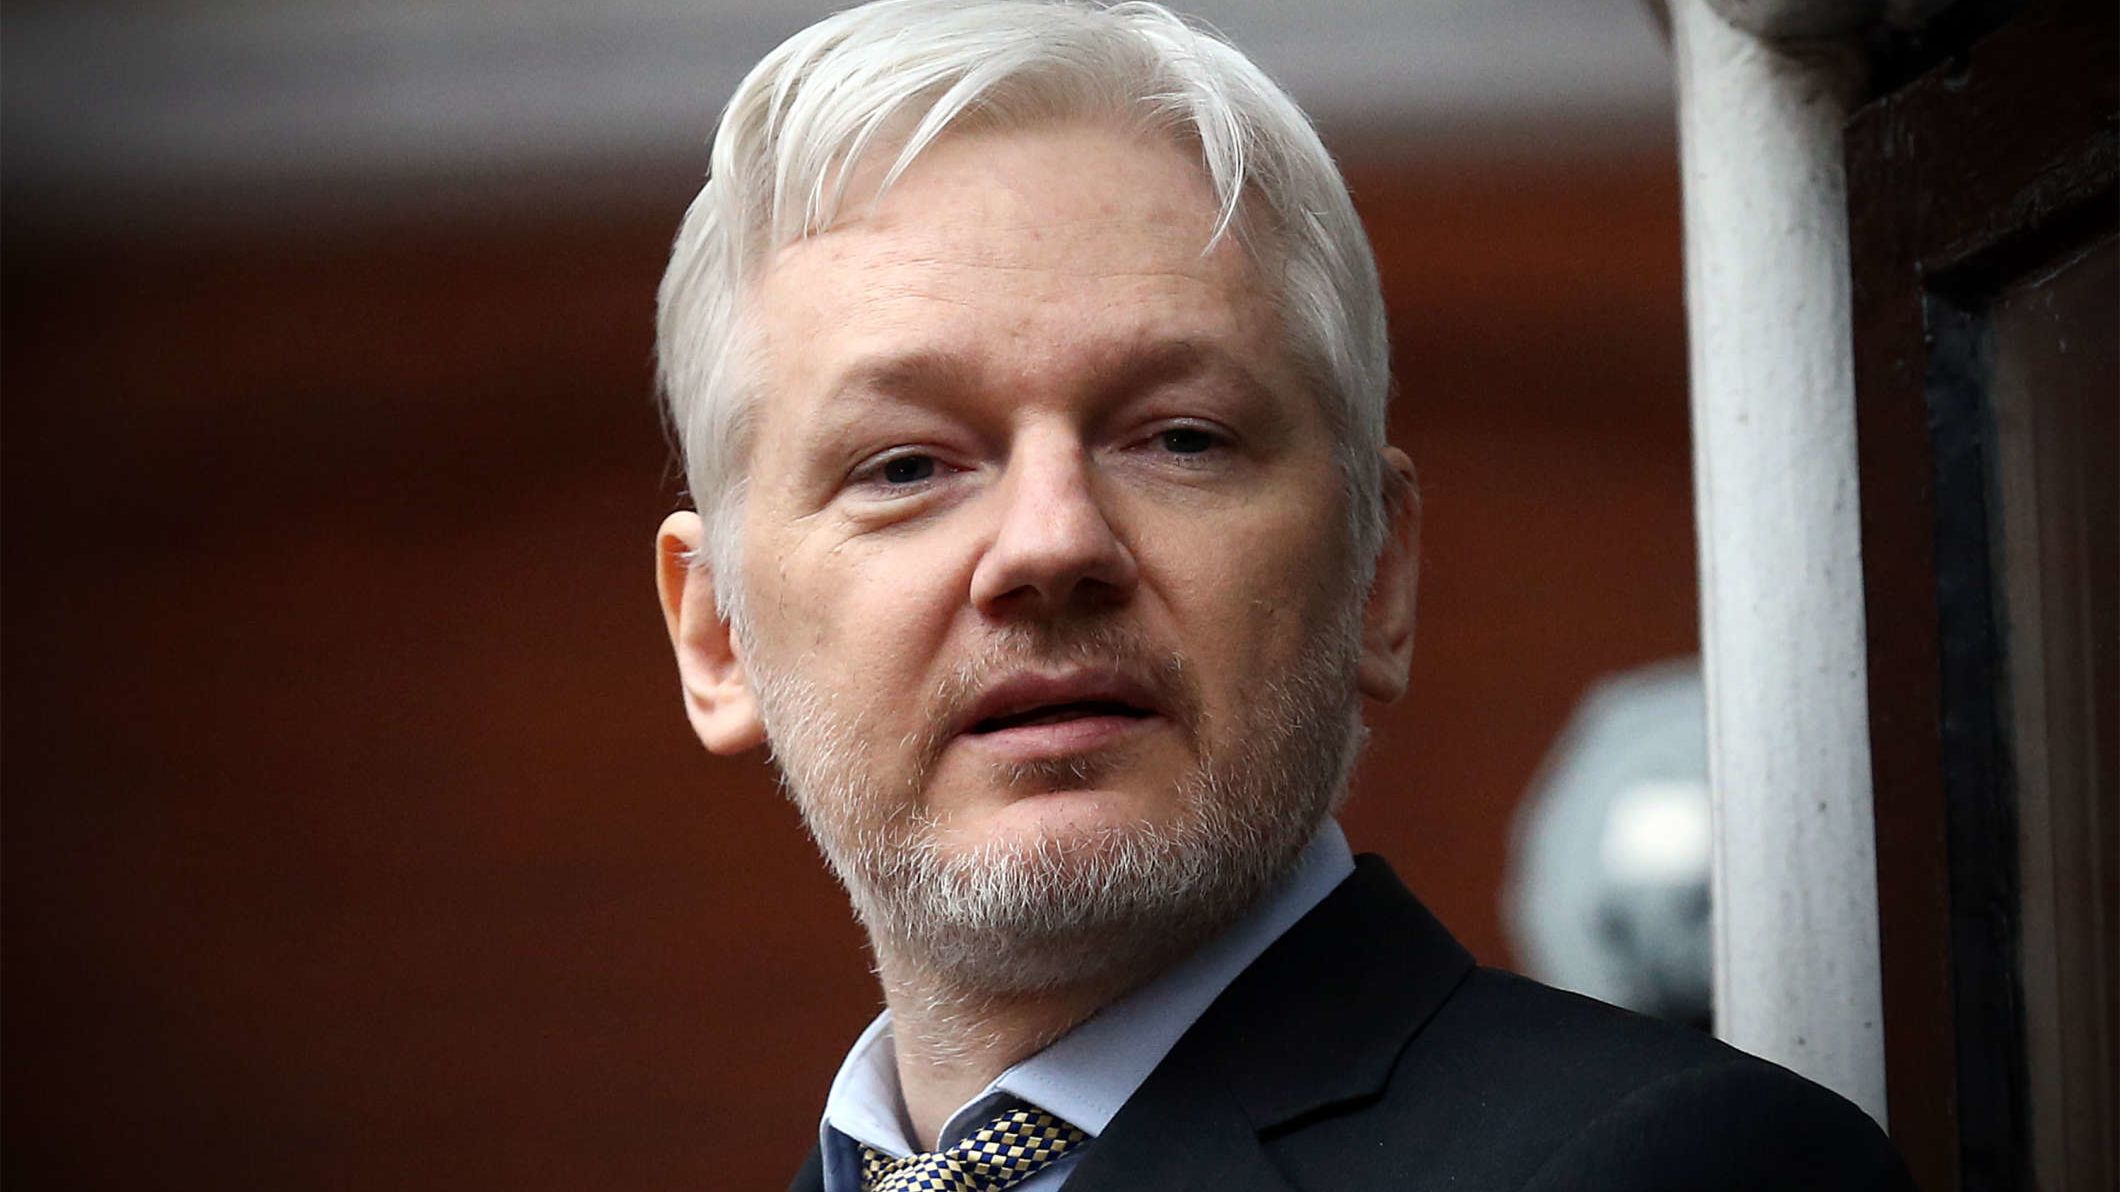 Julian Assange regresa a Australia tras 12 años de batalla legal. Esto es lo que sabemos sobre su acuerdo con EE.UU.